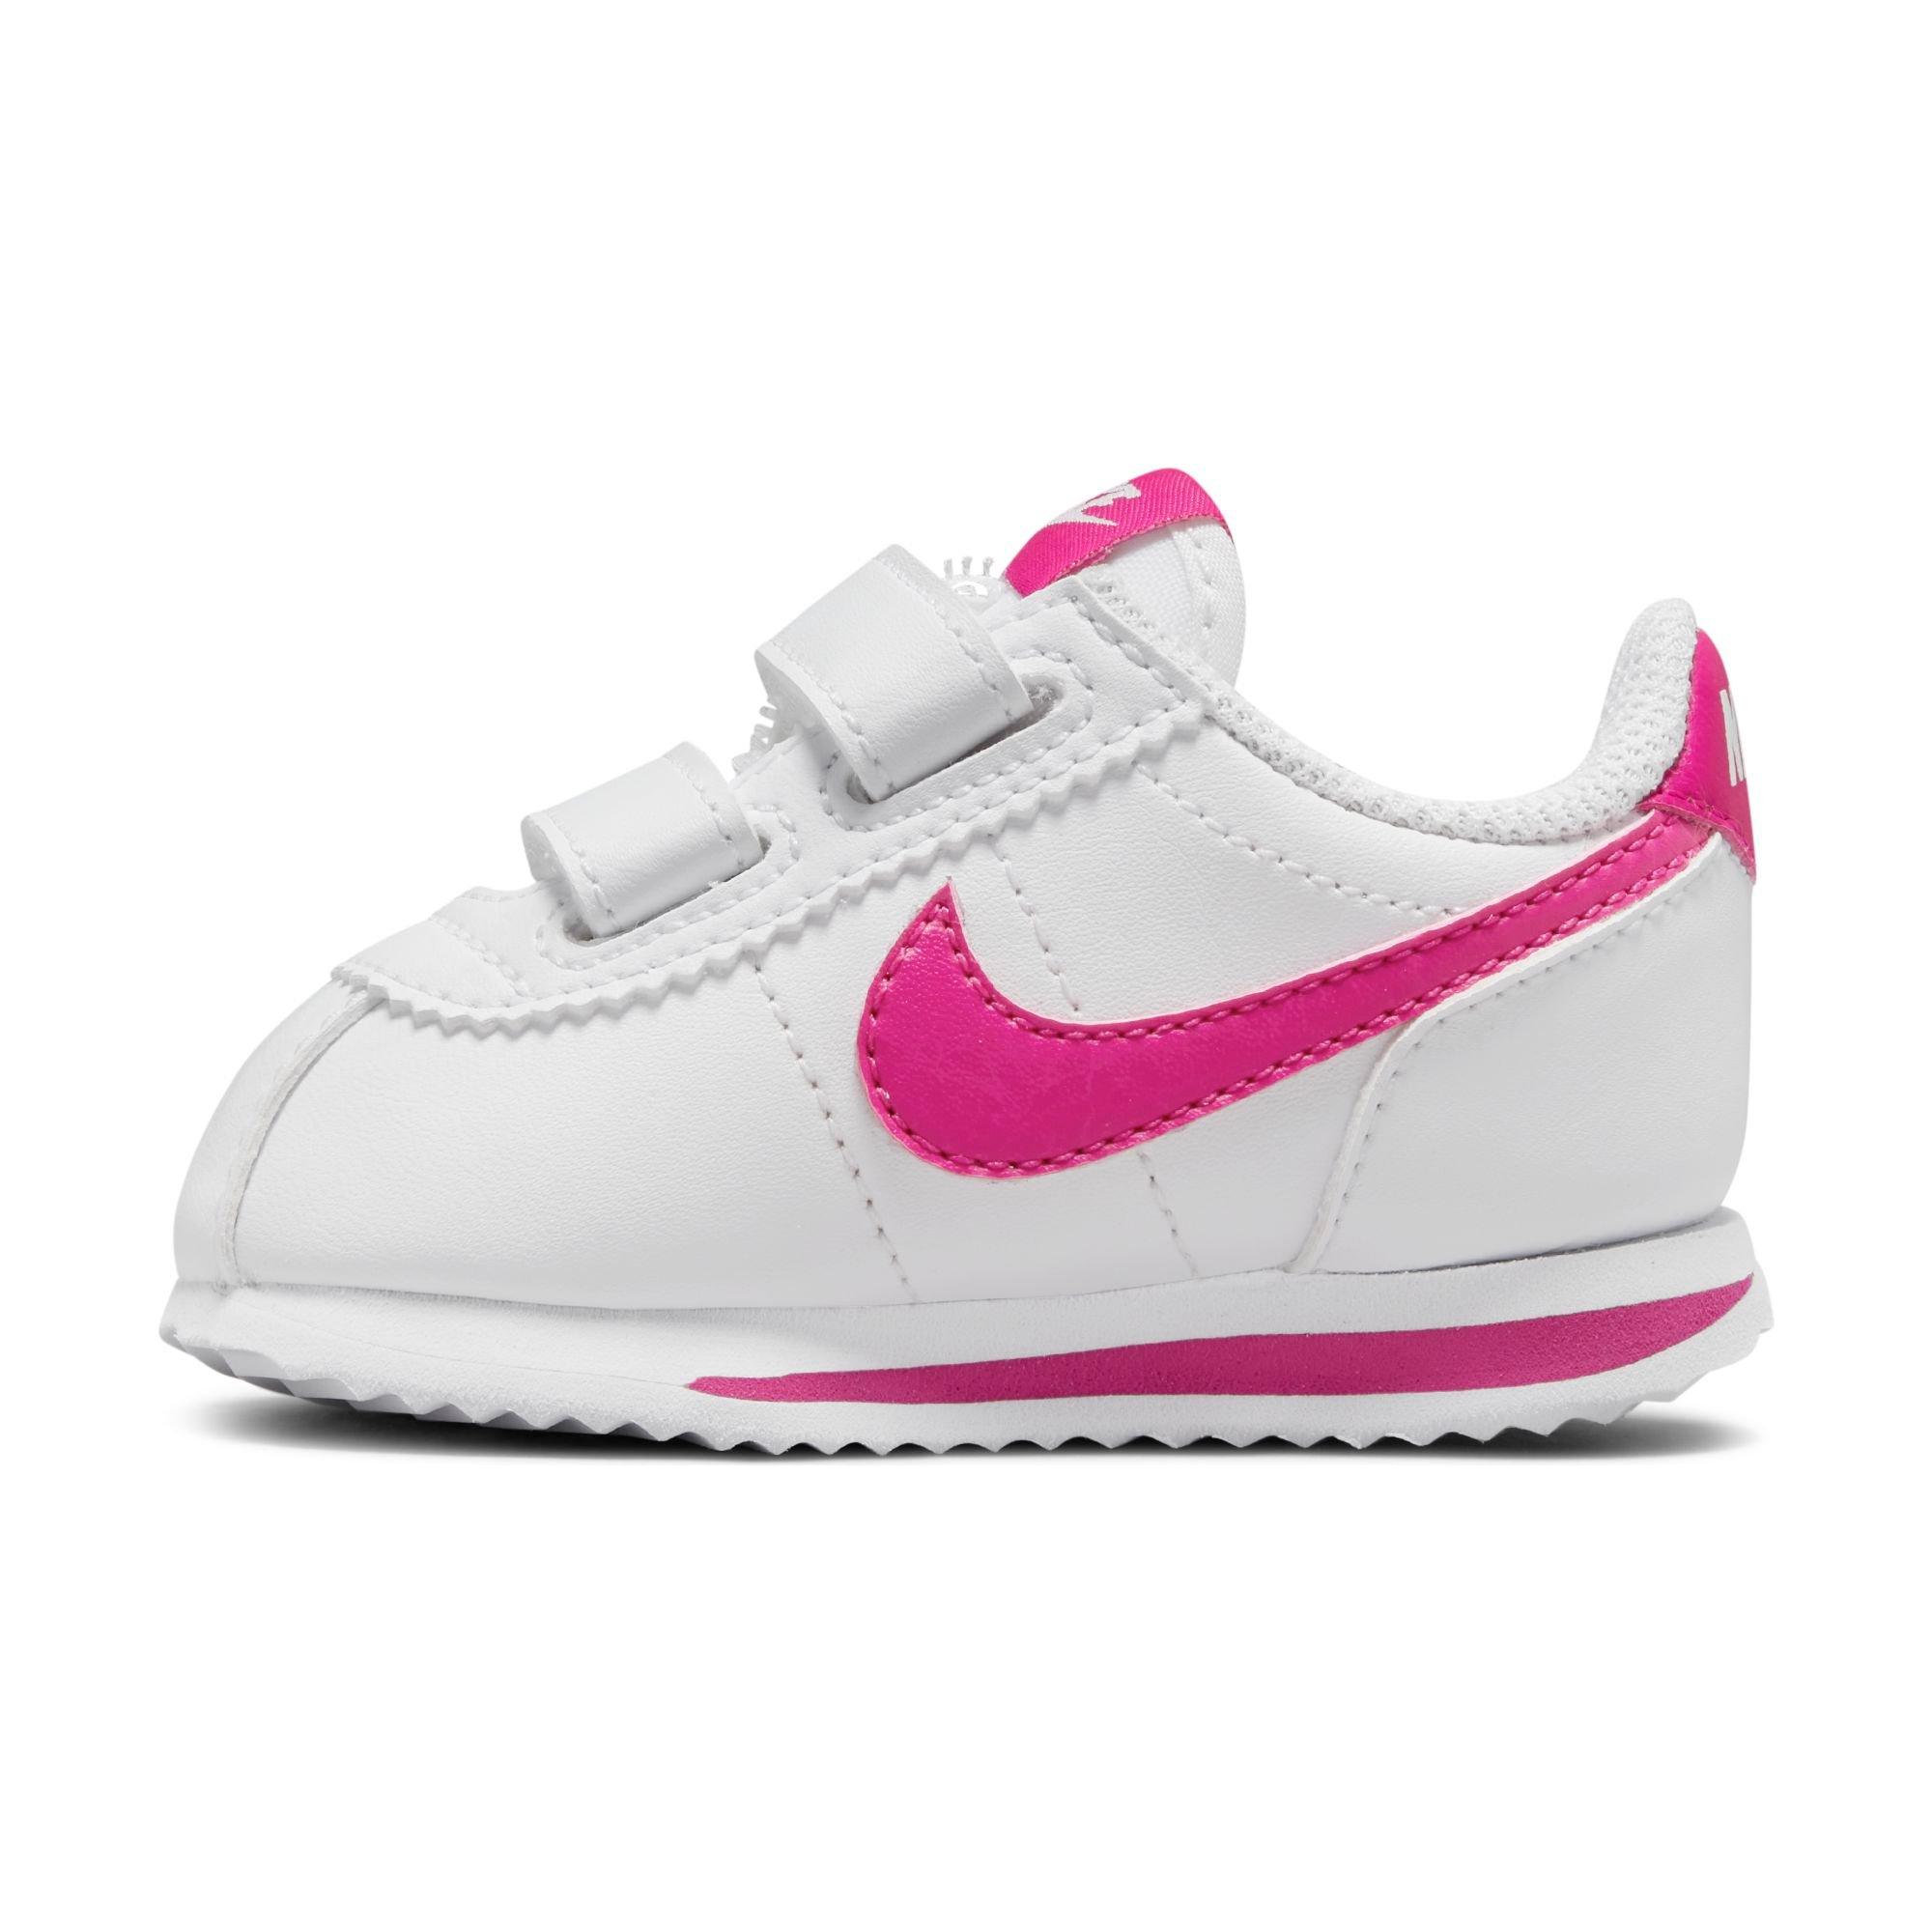 Nike Cortez Basic SL "White/Pink Shoe